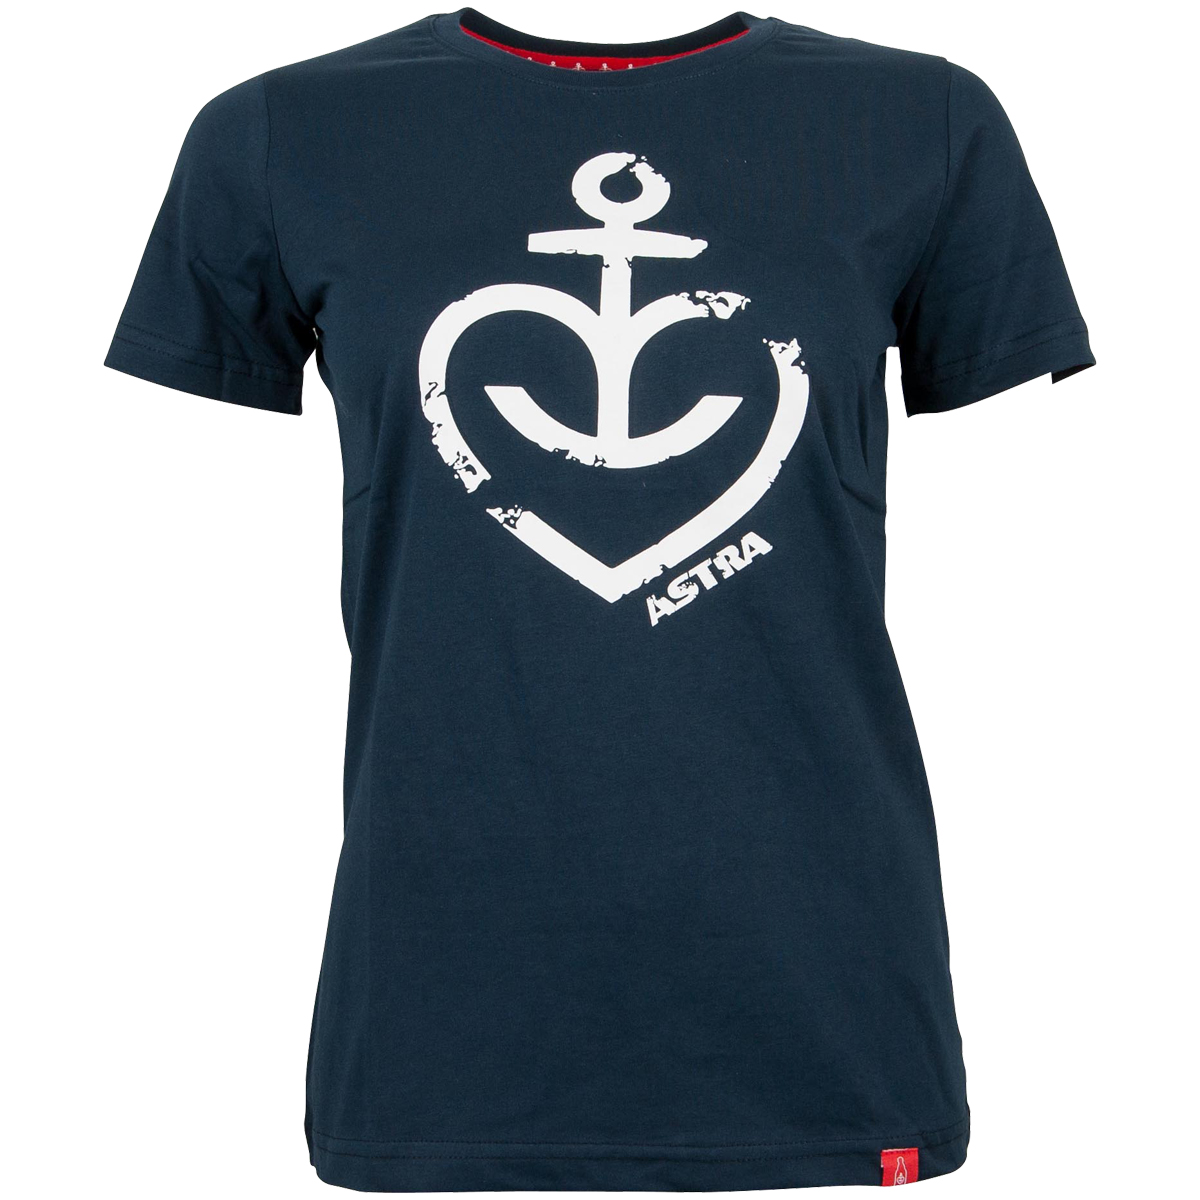 Astra - Damen T-Shirt Herzanker Navy Weiß - blau